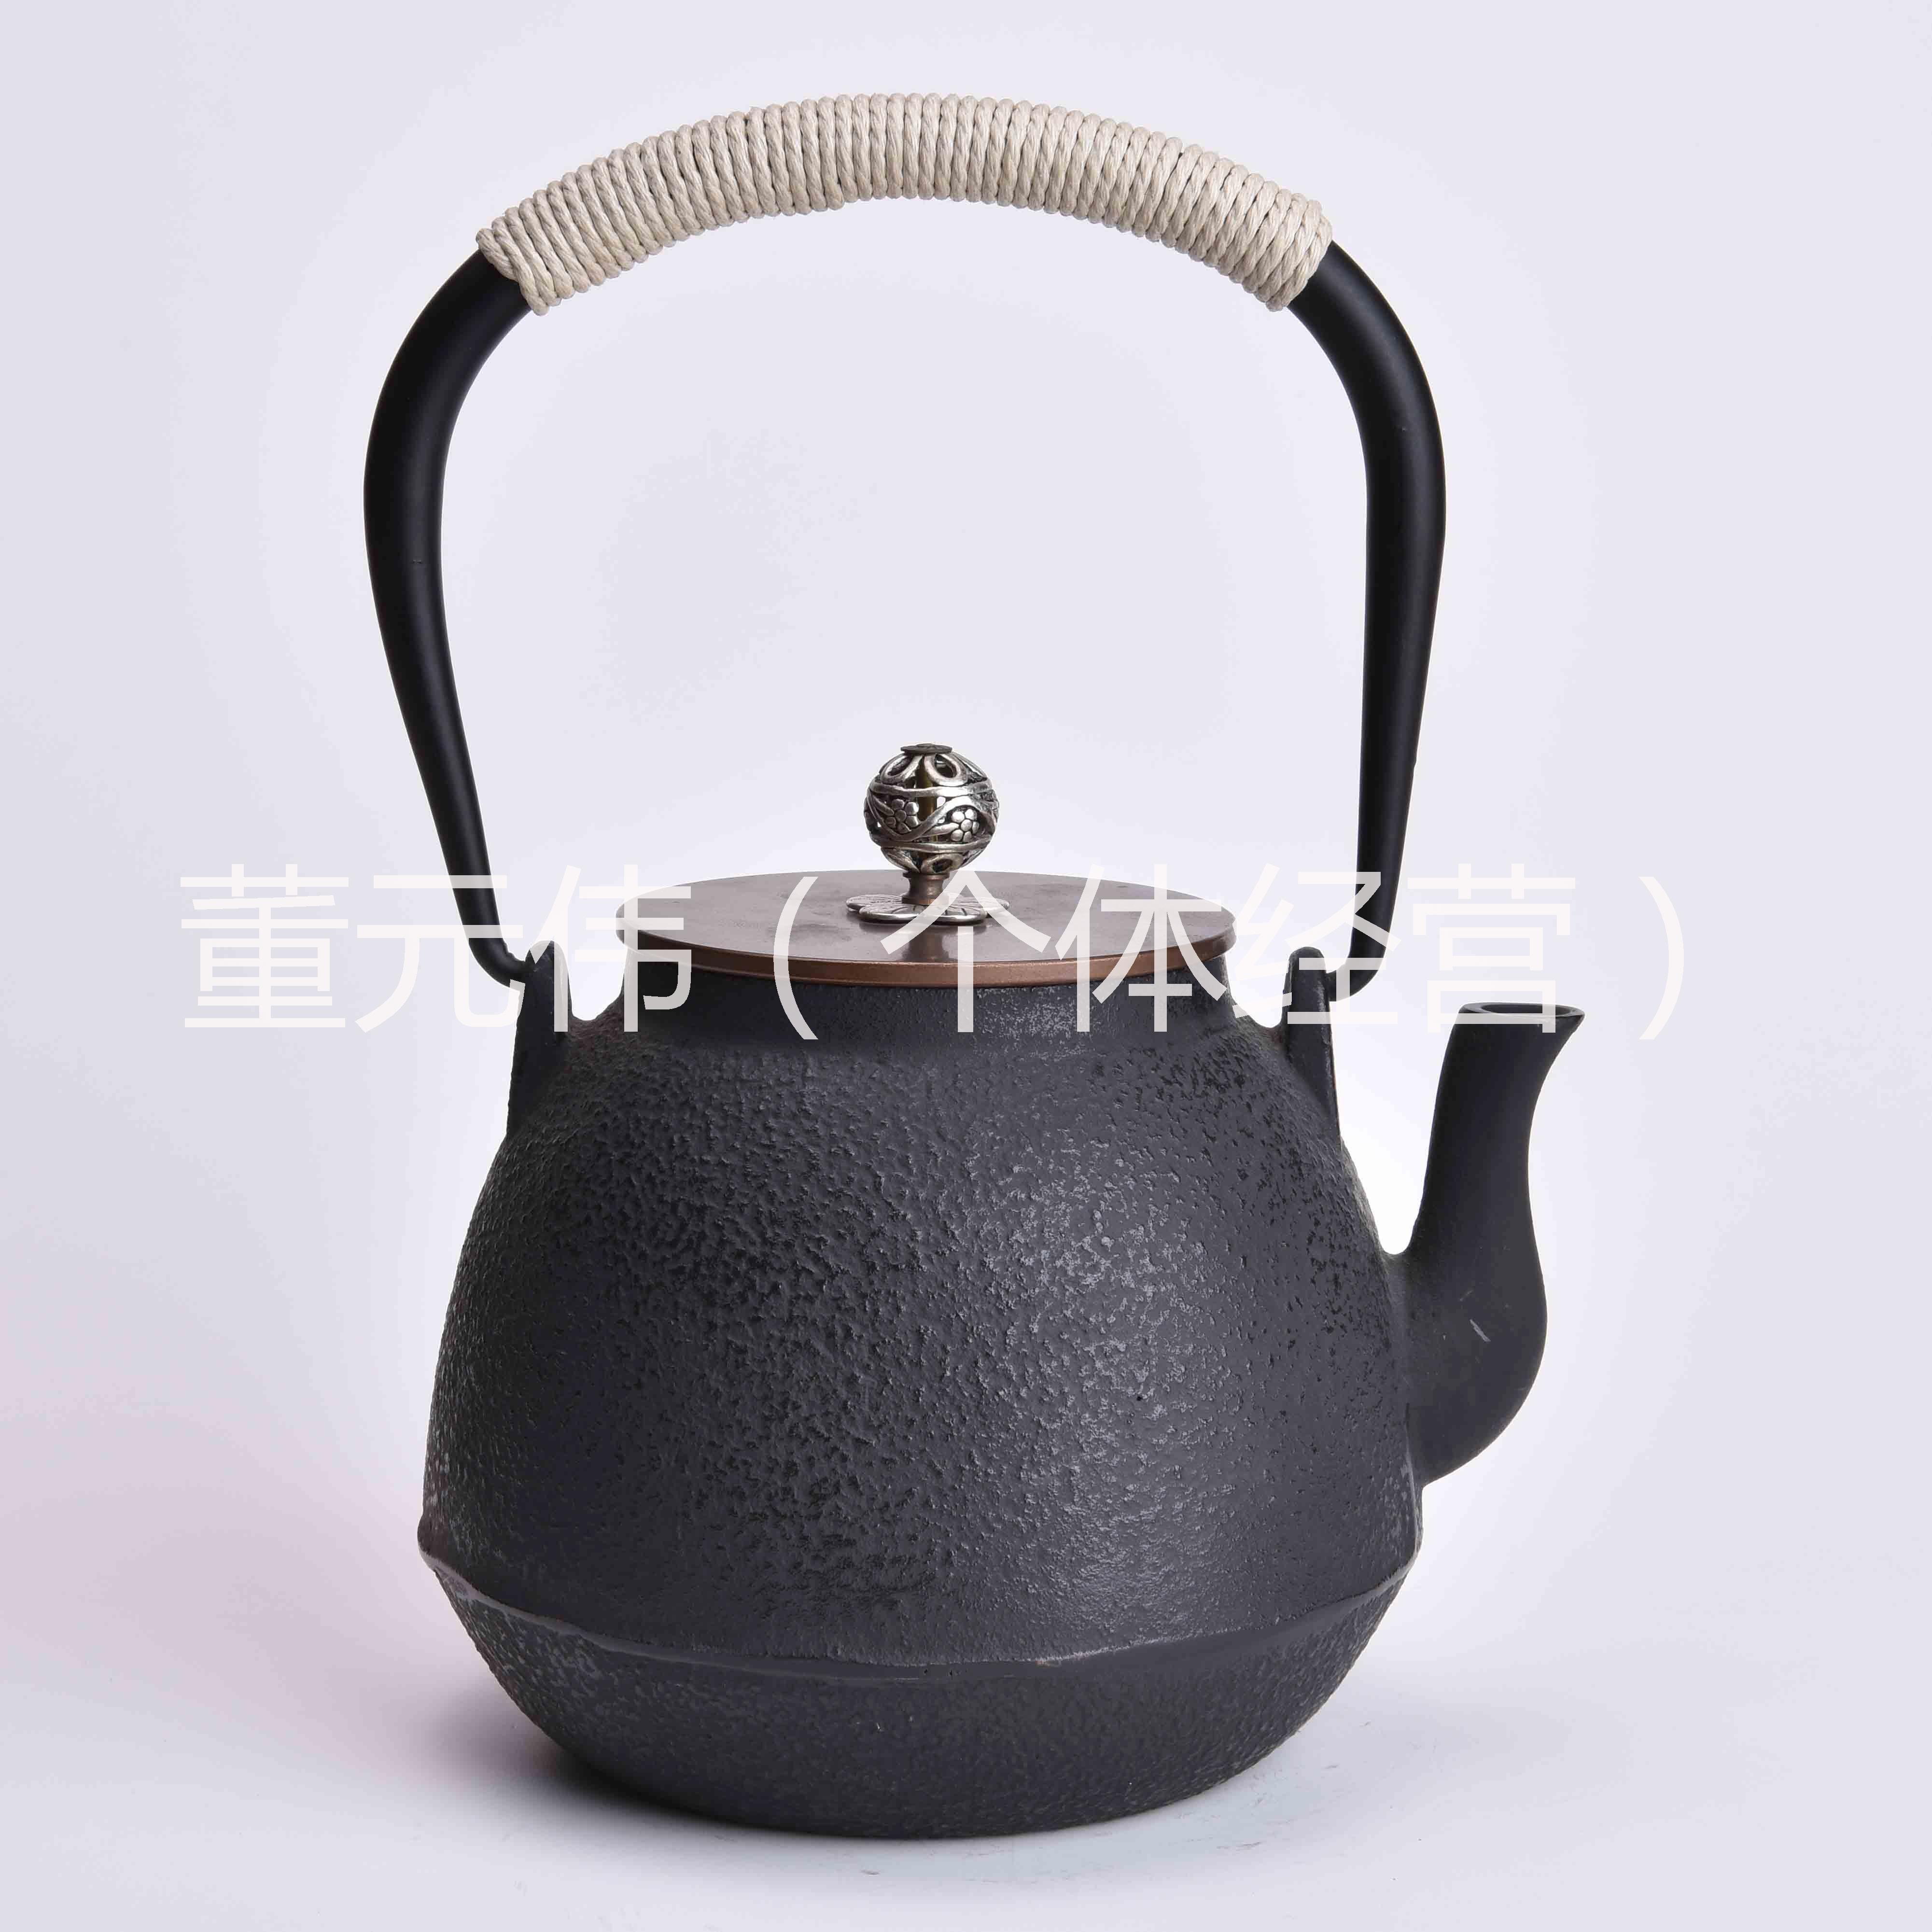 供应公佳铁茶壶冰裂素壶铸铁壶煮茶壶老铁壶日本铁壶铜盖烧水壶